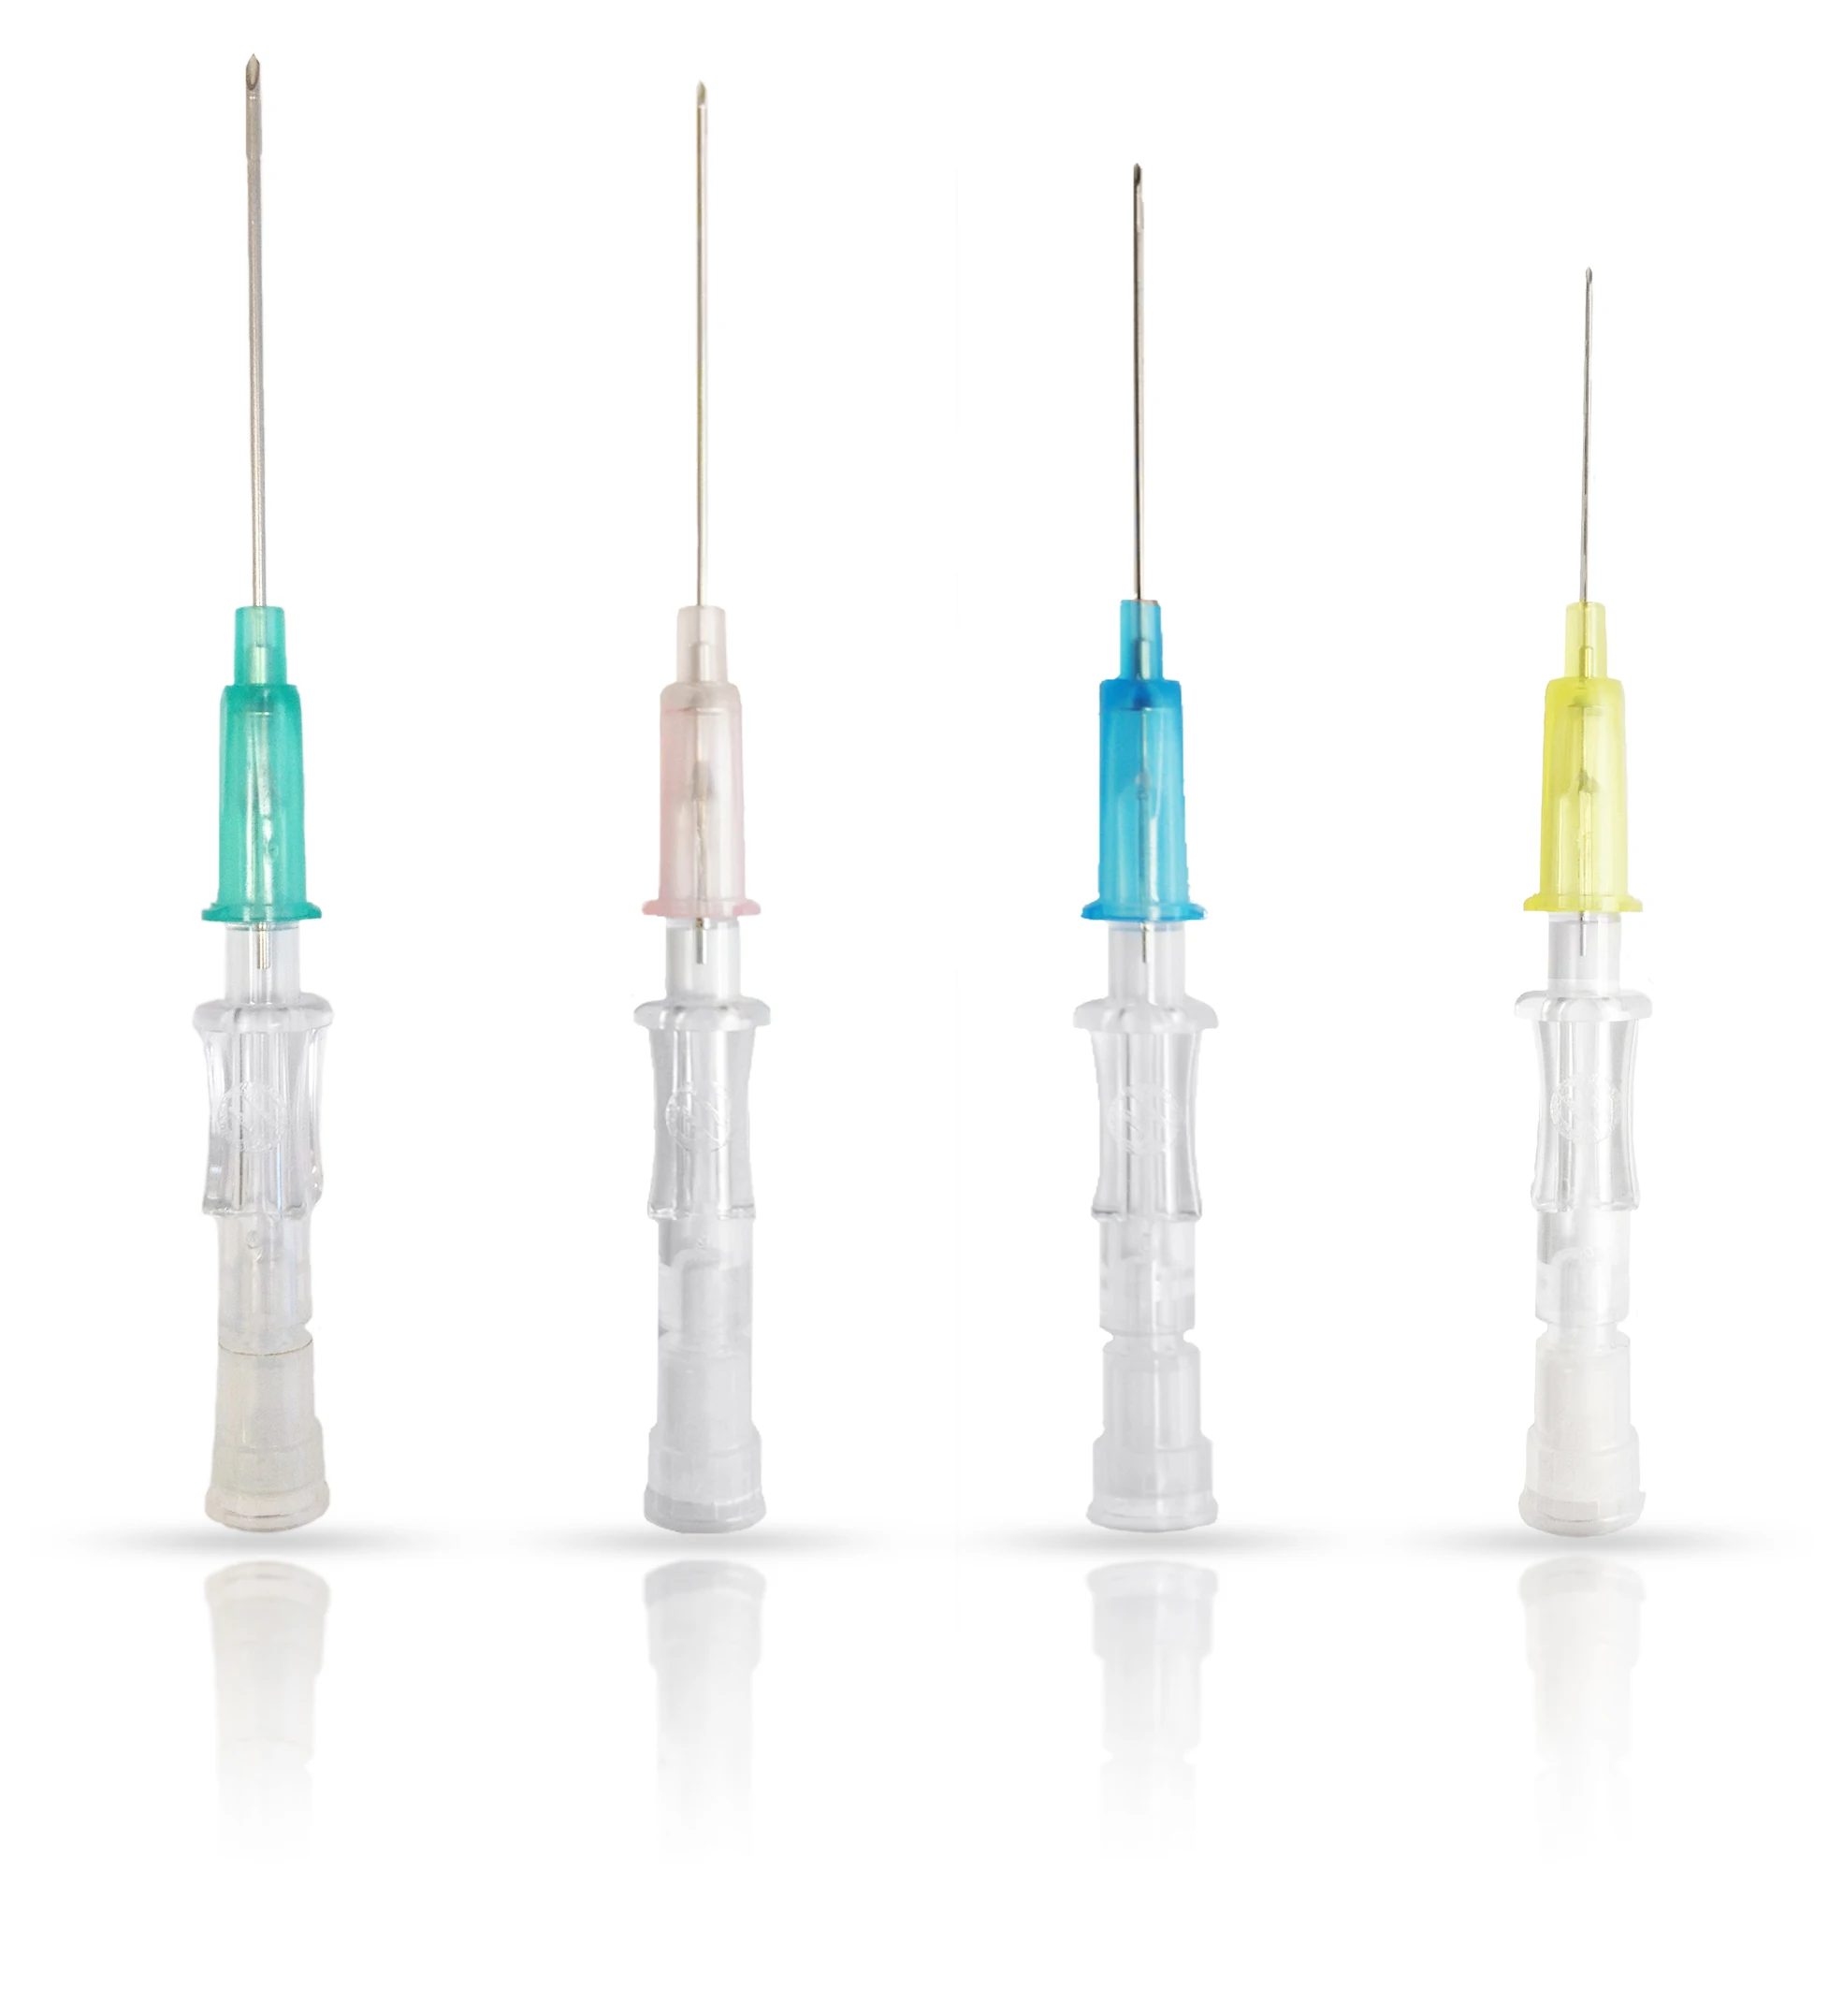 
Medical Syringes 